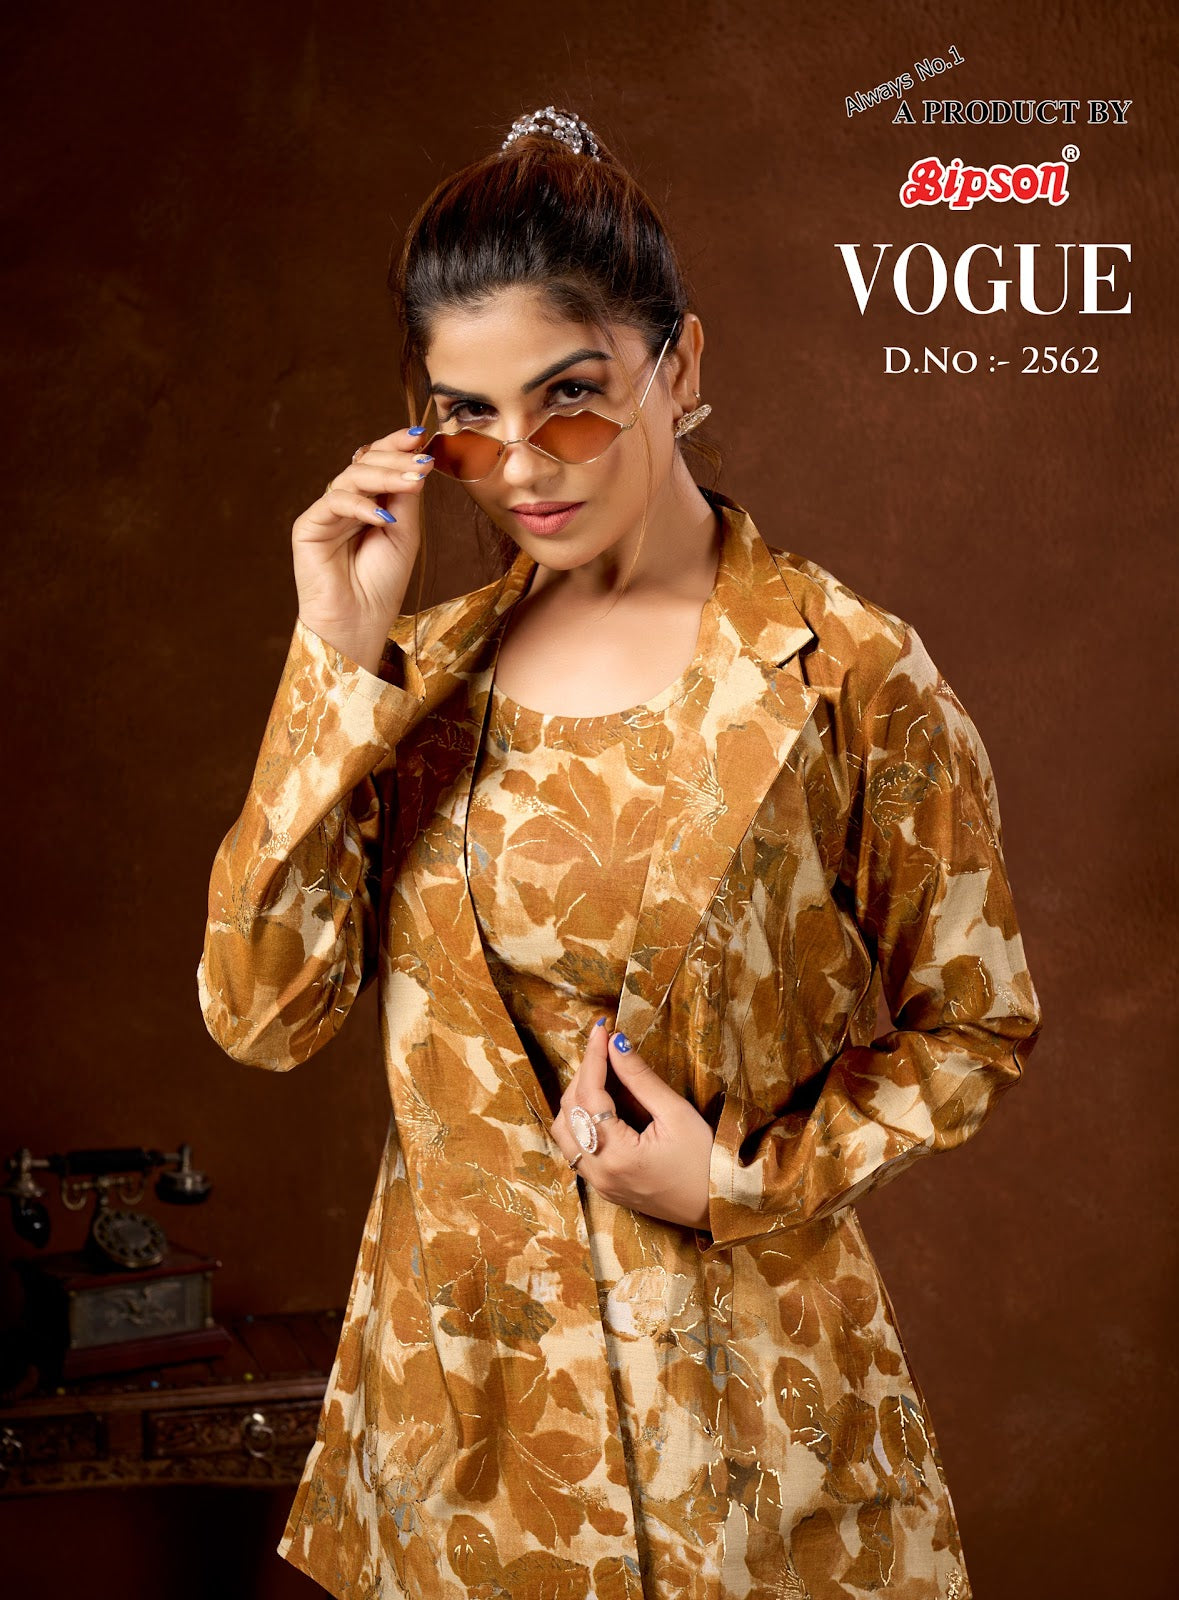 Vogue 2562 Bipson Prints Modal Chanderi Co Ord Set